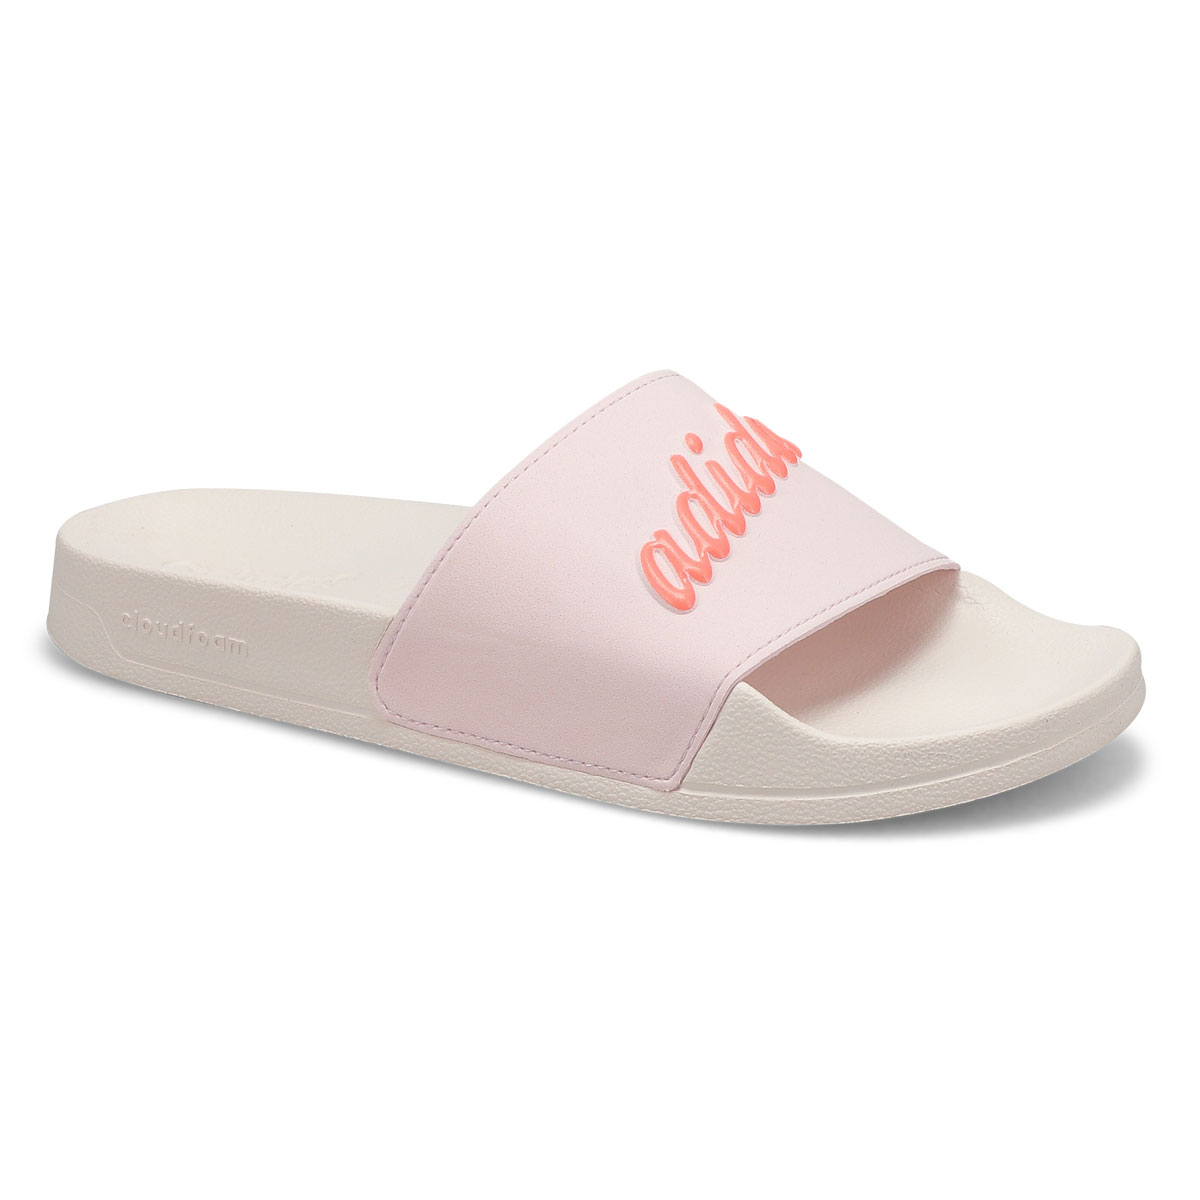 Women's Adilette Shower Slide Sandal - Pink/White